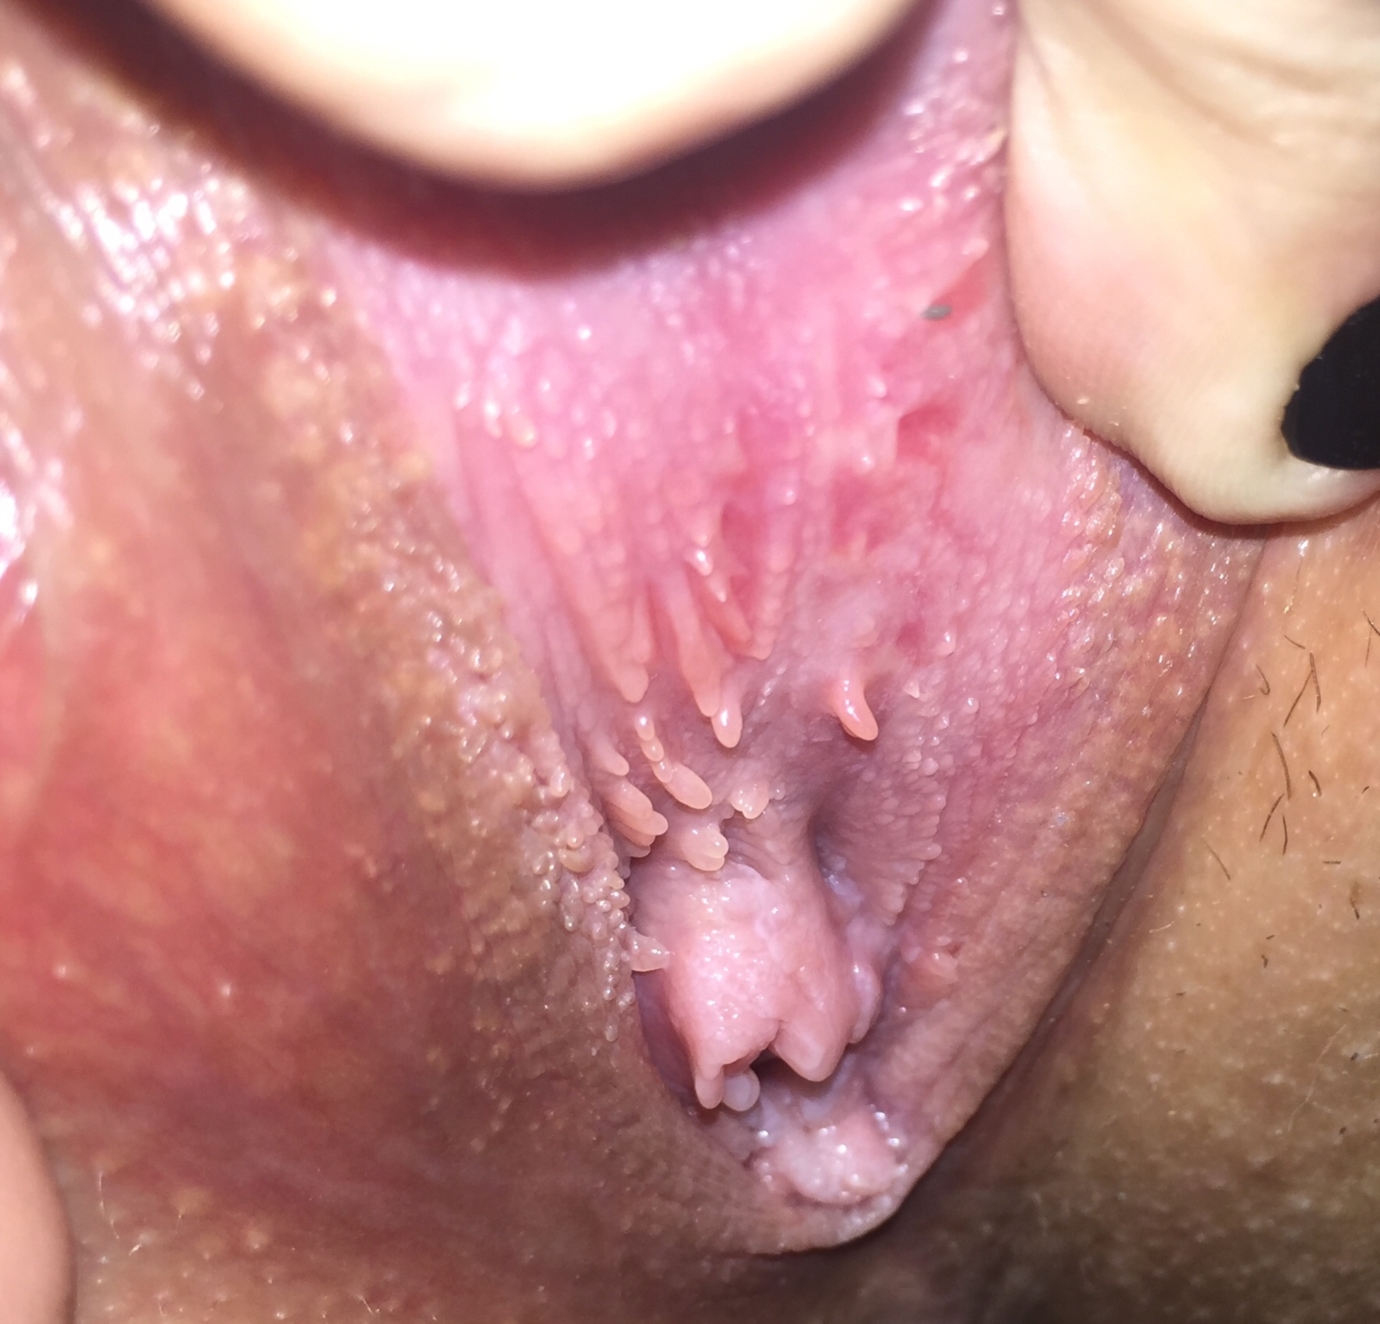 сперма попала на половые губы можно забеременеть фото 79